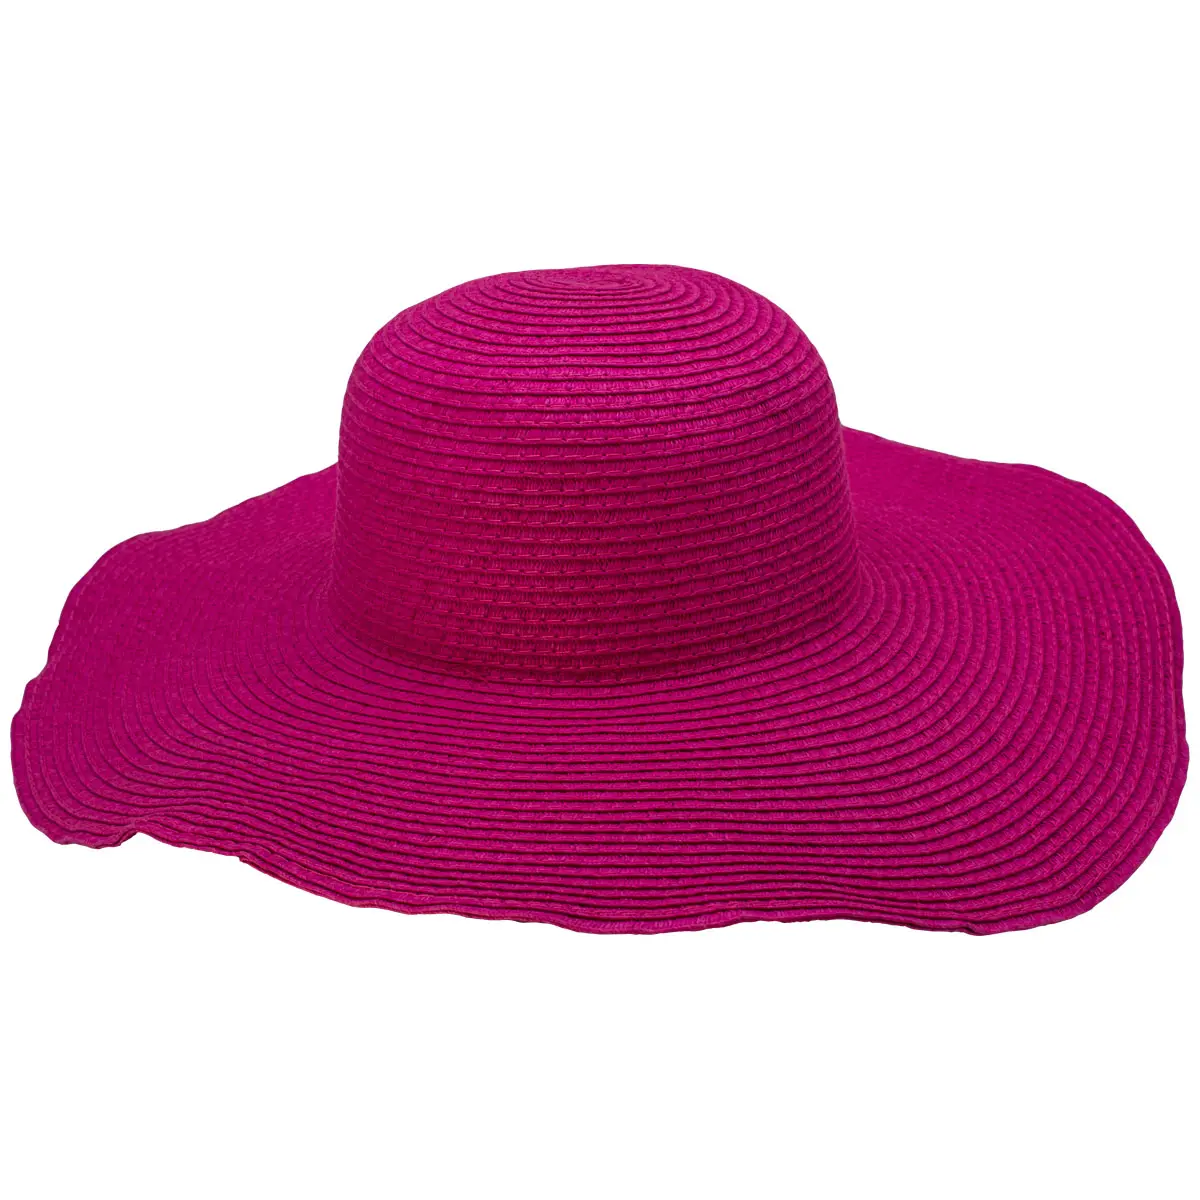 Moda bayan şapka saman Fedora şapka pembe hasır şapka